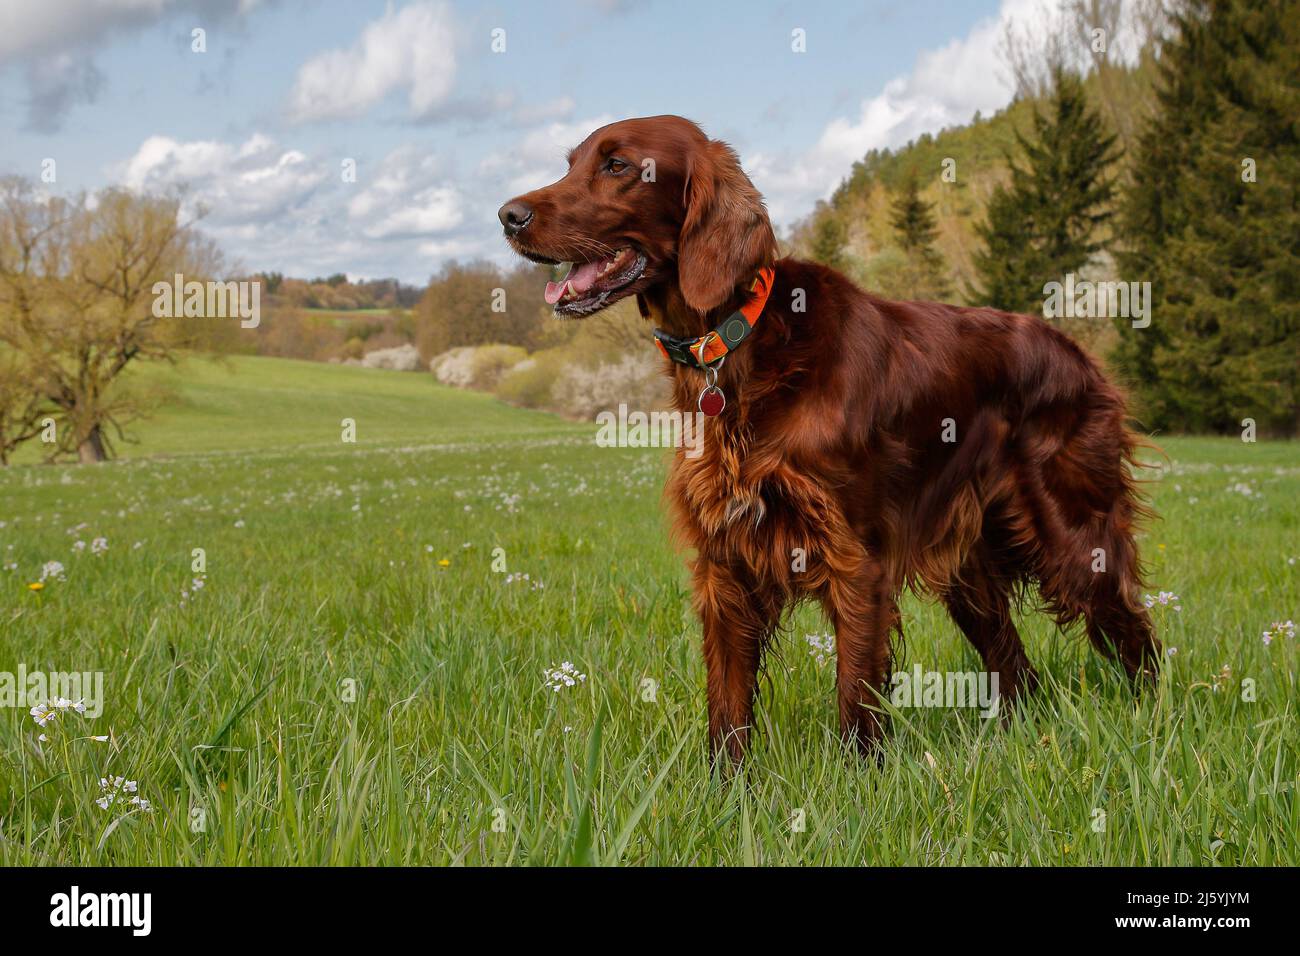 Der Irish Setter, einer der schönsten und elegantesten Jagdhunde, steht im blühenden Frühlingstal auf einer saftig grünen Wiese. Stockfoto